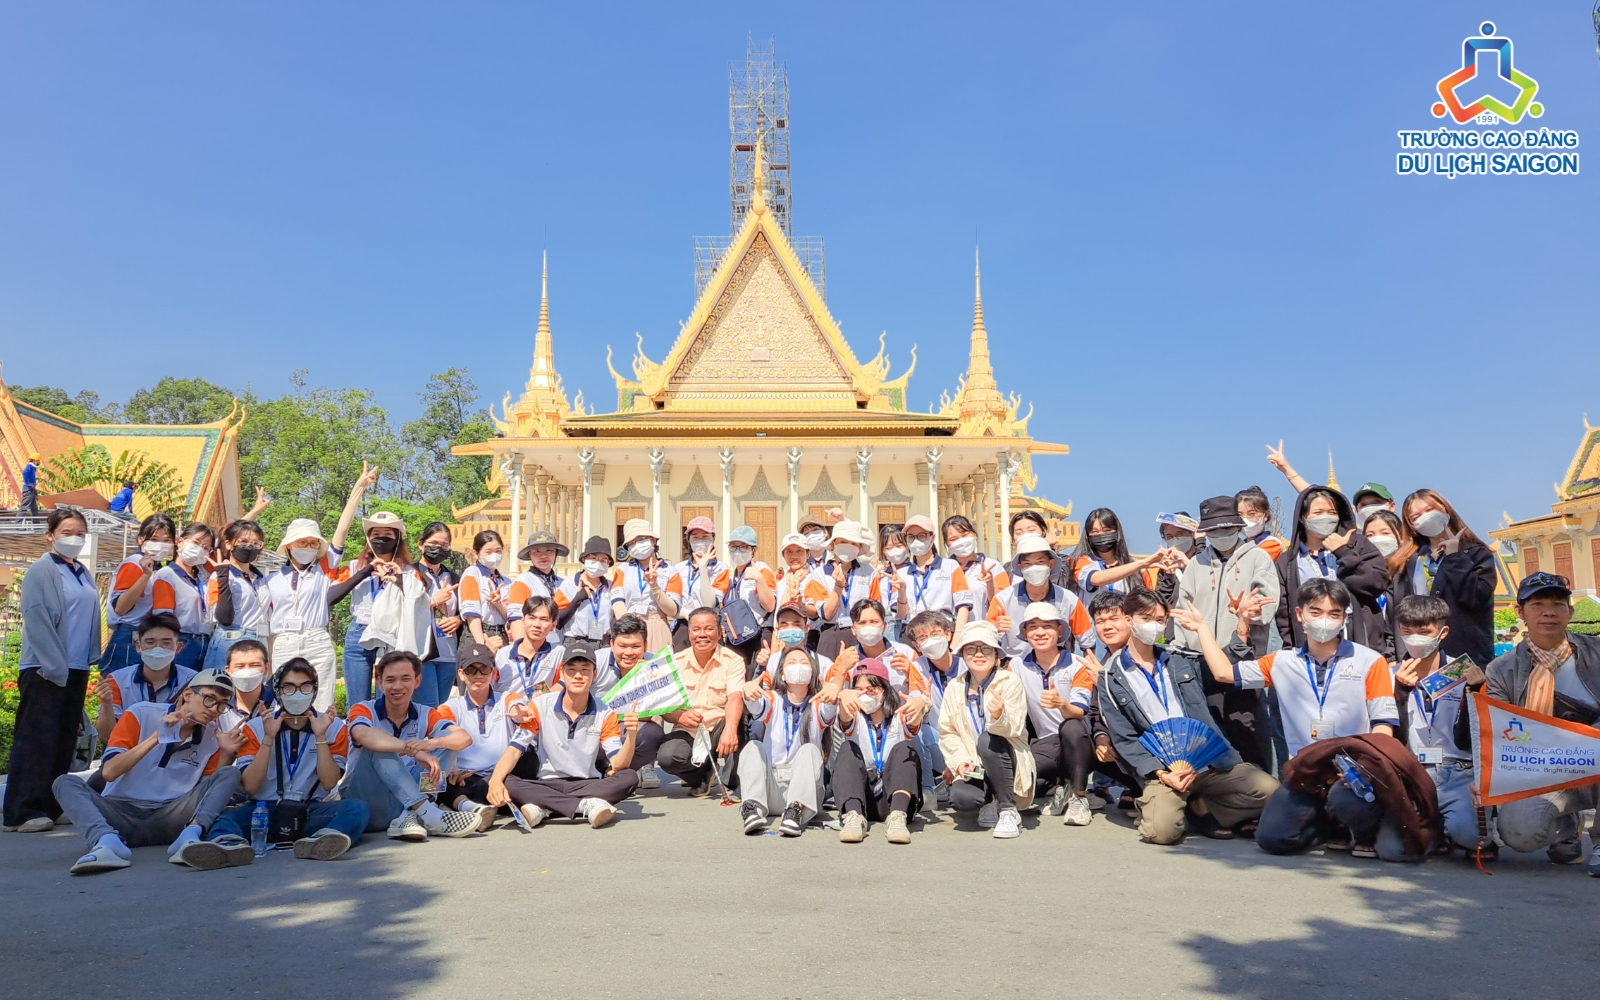 Chương trình đào tạo trường Cao đẳng du lịch Sài Gòn